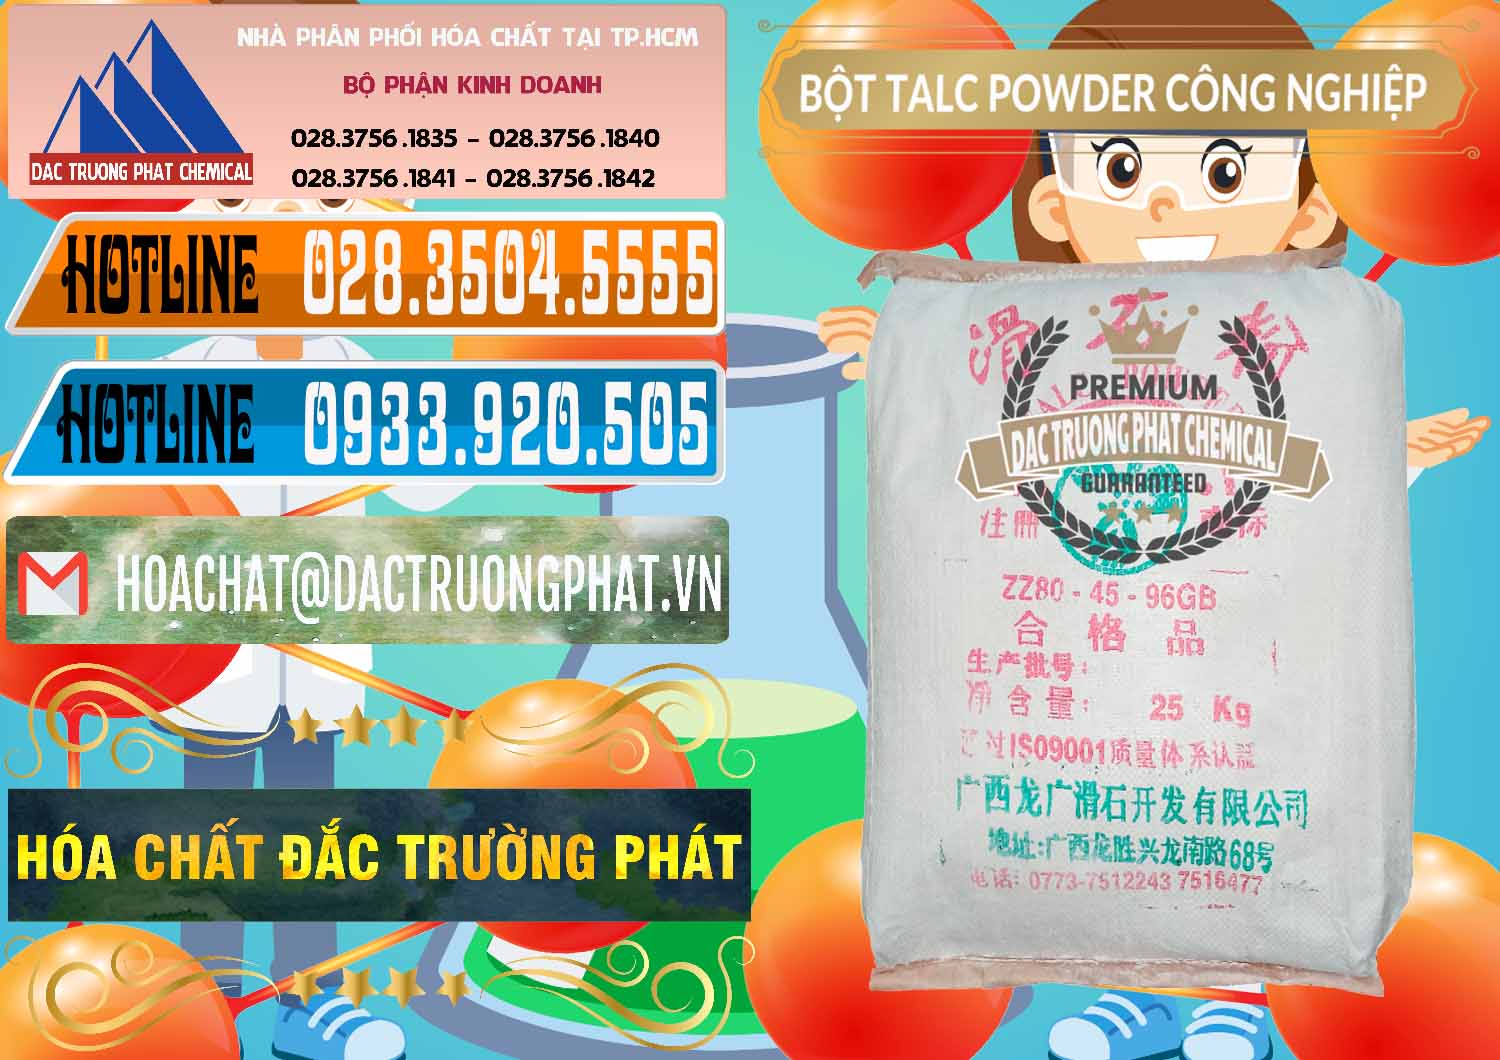 Chuyên bán ( cung ứng ) Bột Talc Powder Công Nghiệp Trung Quốc China - 0037 - Công ty chuyên phân phối ( nhập khẩu ) hóa chất tại TP.HCM - stmp.net